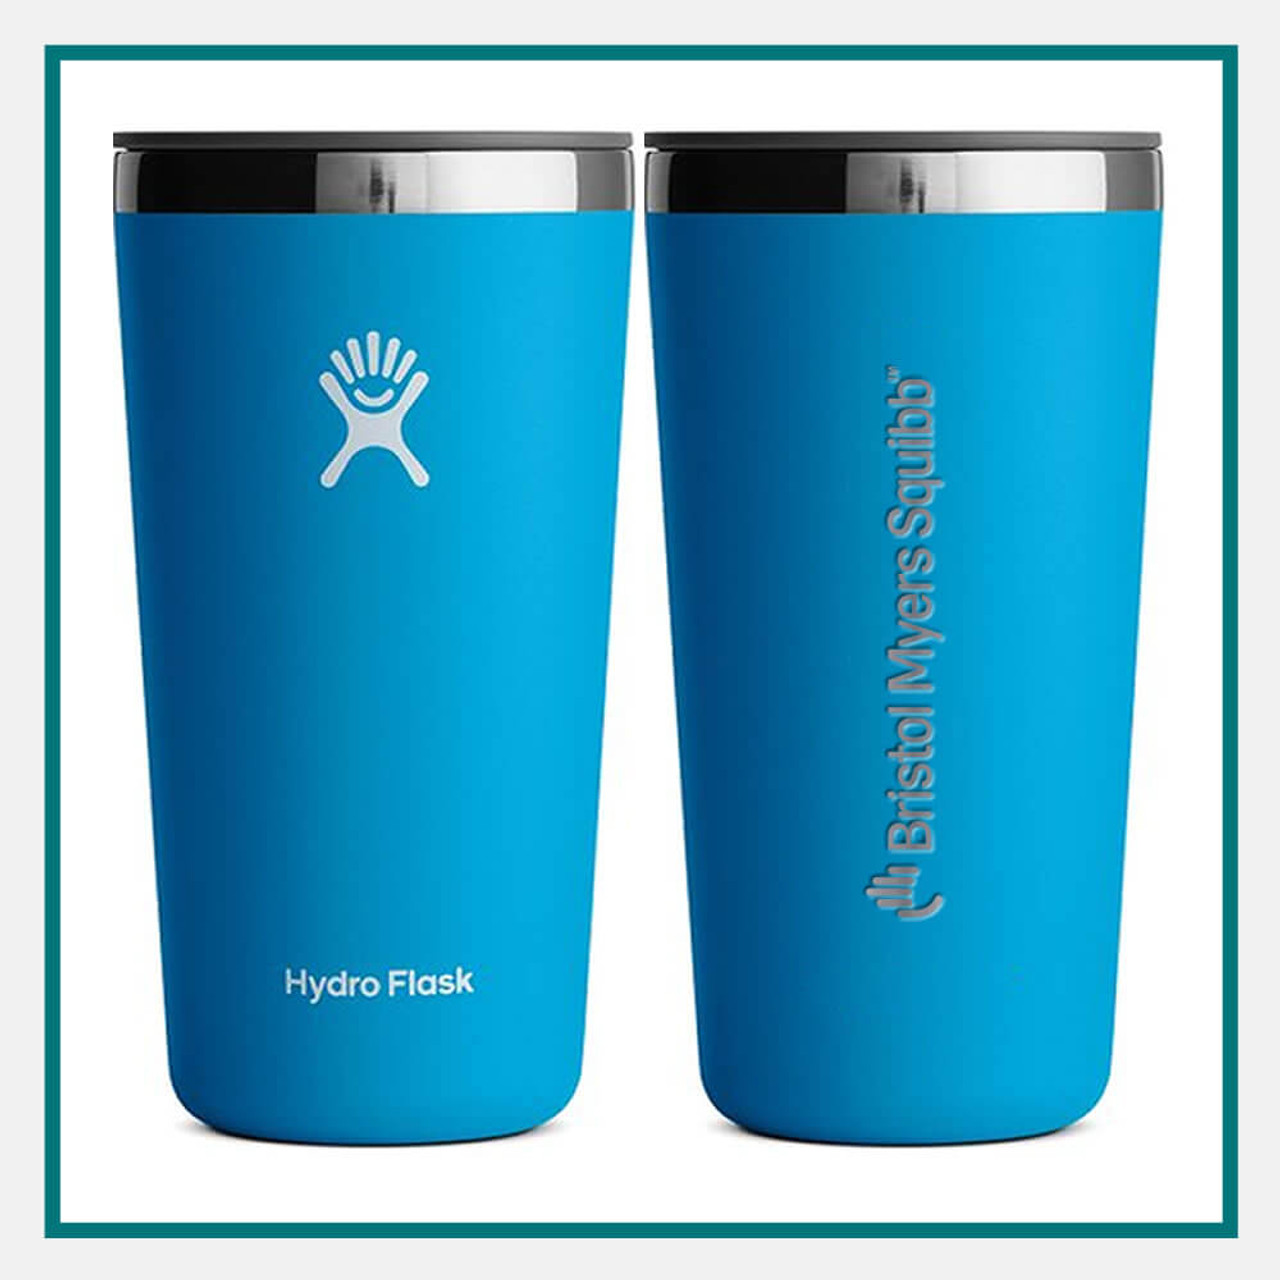 Hydro Flask 16 oz All Around Tumbler, Indigo